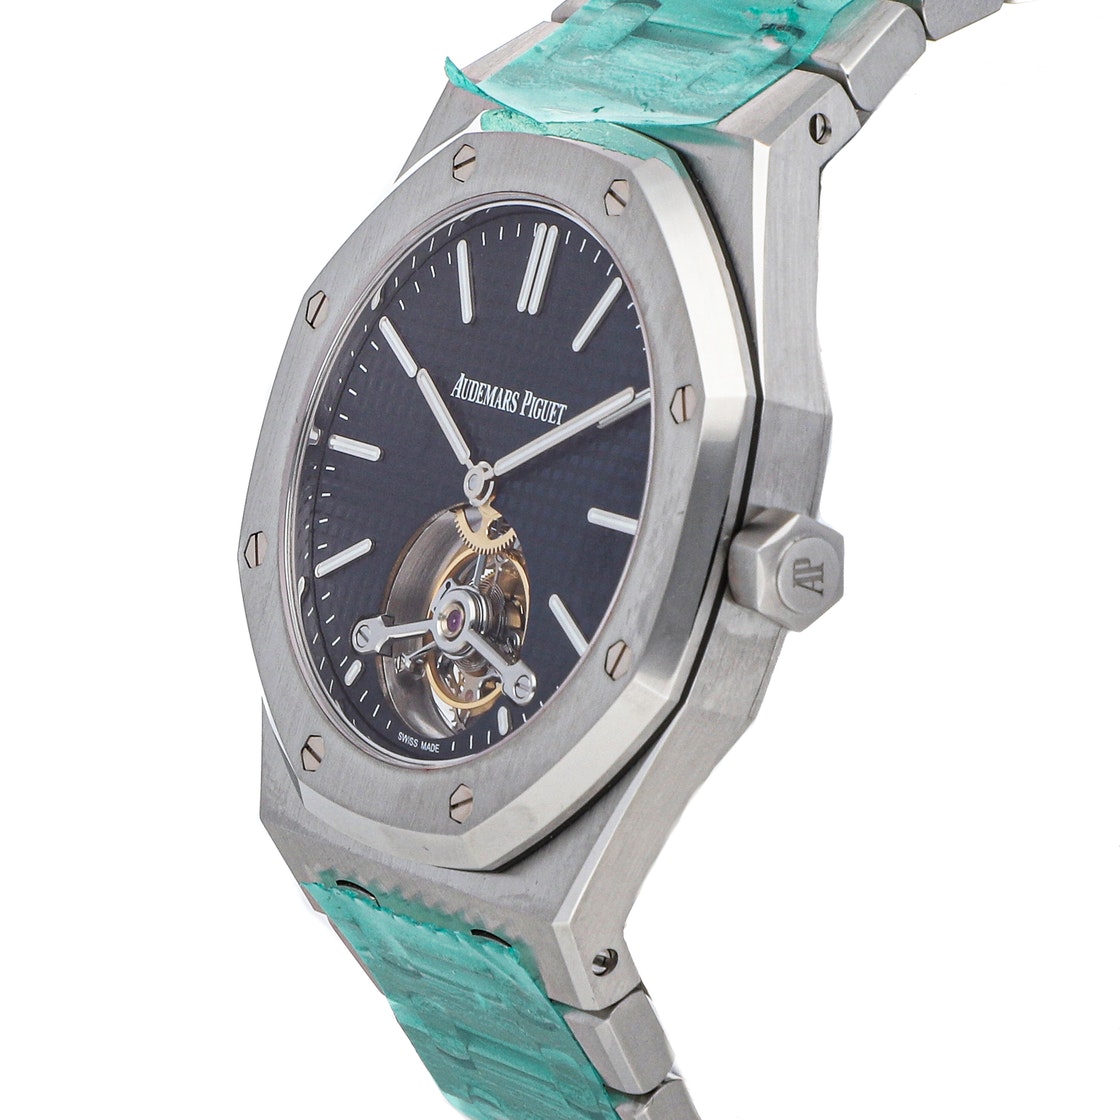 

Audemars Piguet Blue Stainless Steel Royal Oak Tourbillon 26510ST.OO.1220ST.01 Men's Wristwatch 41 MM